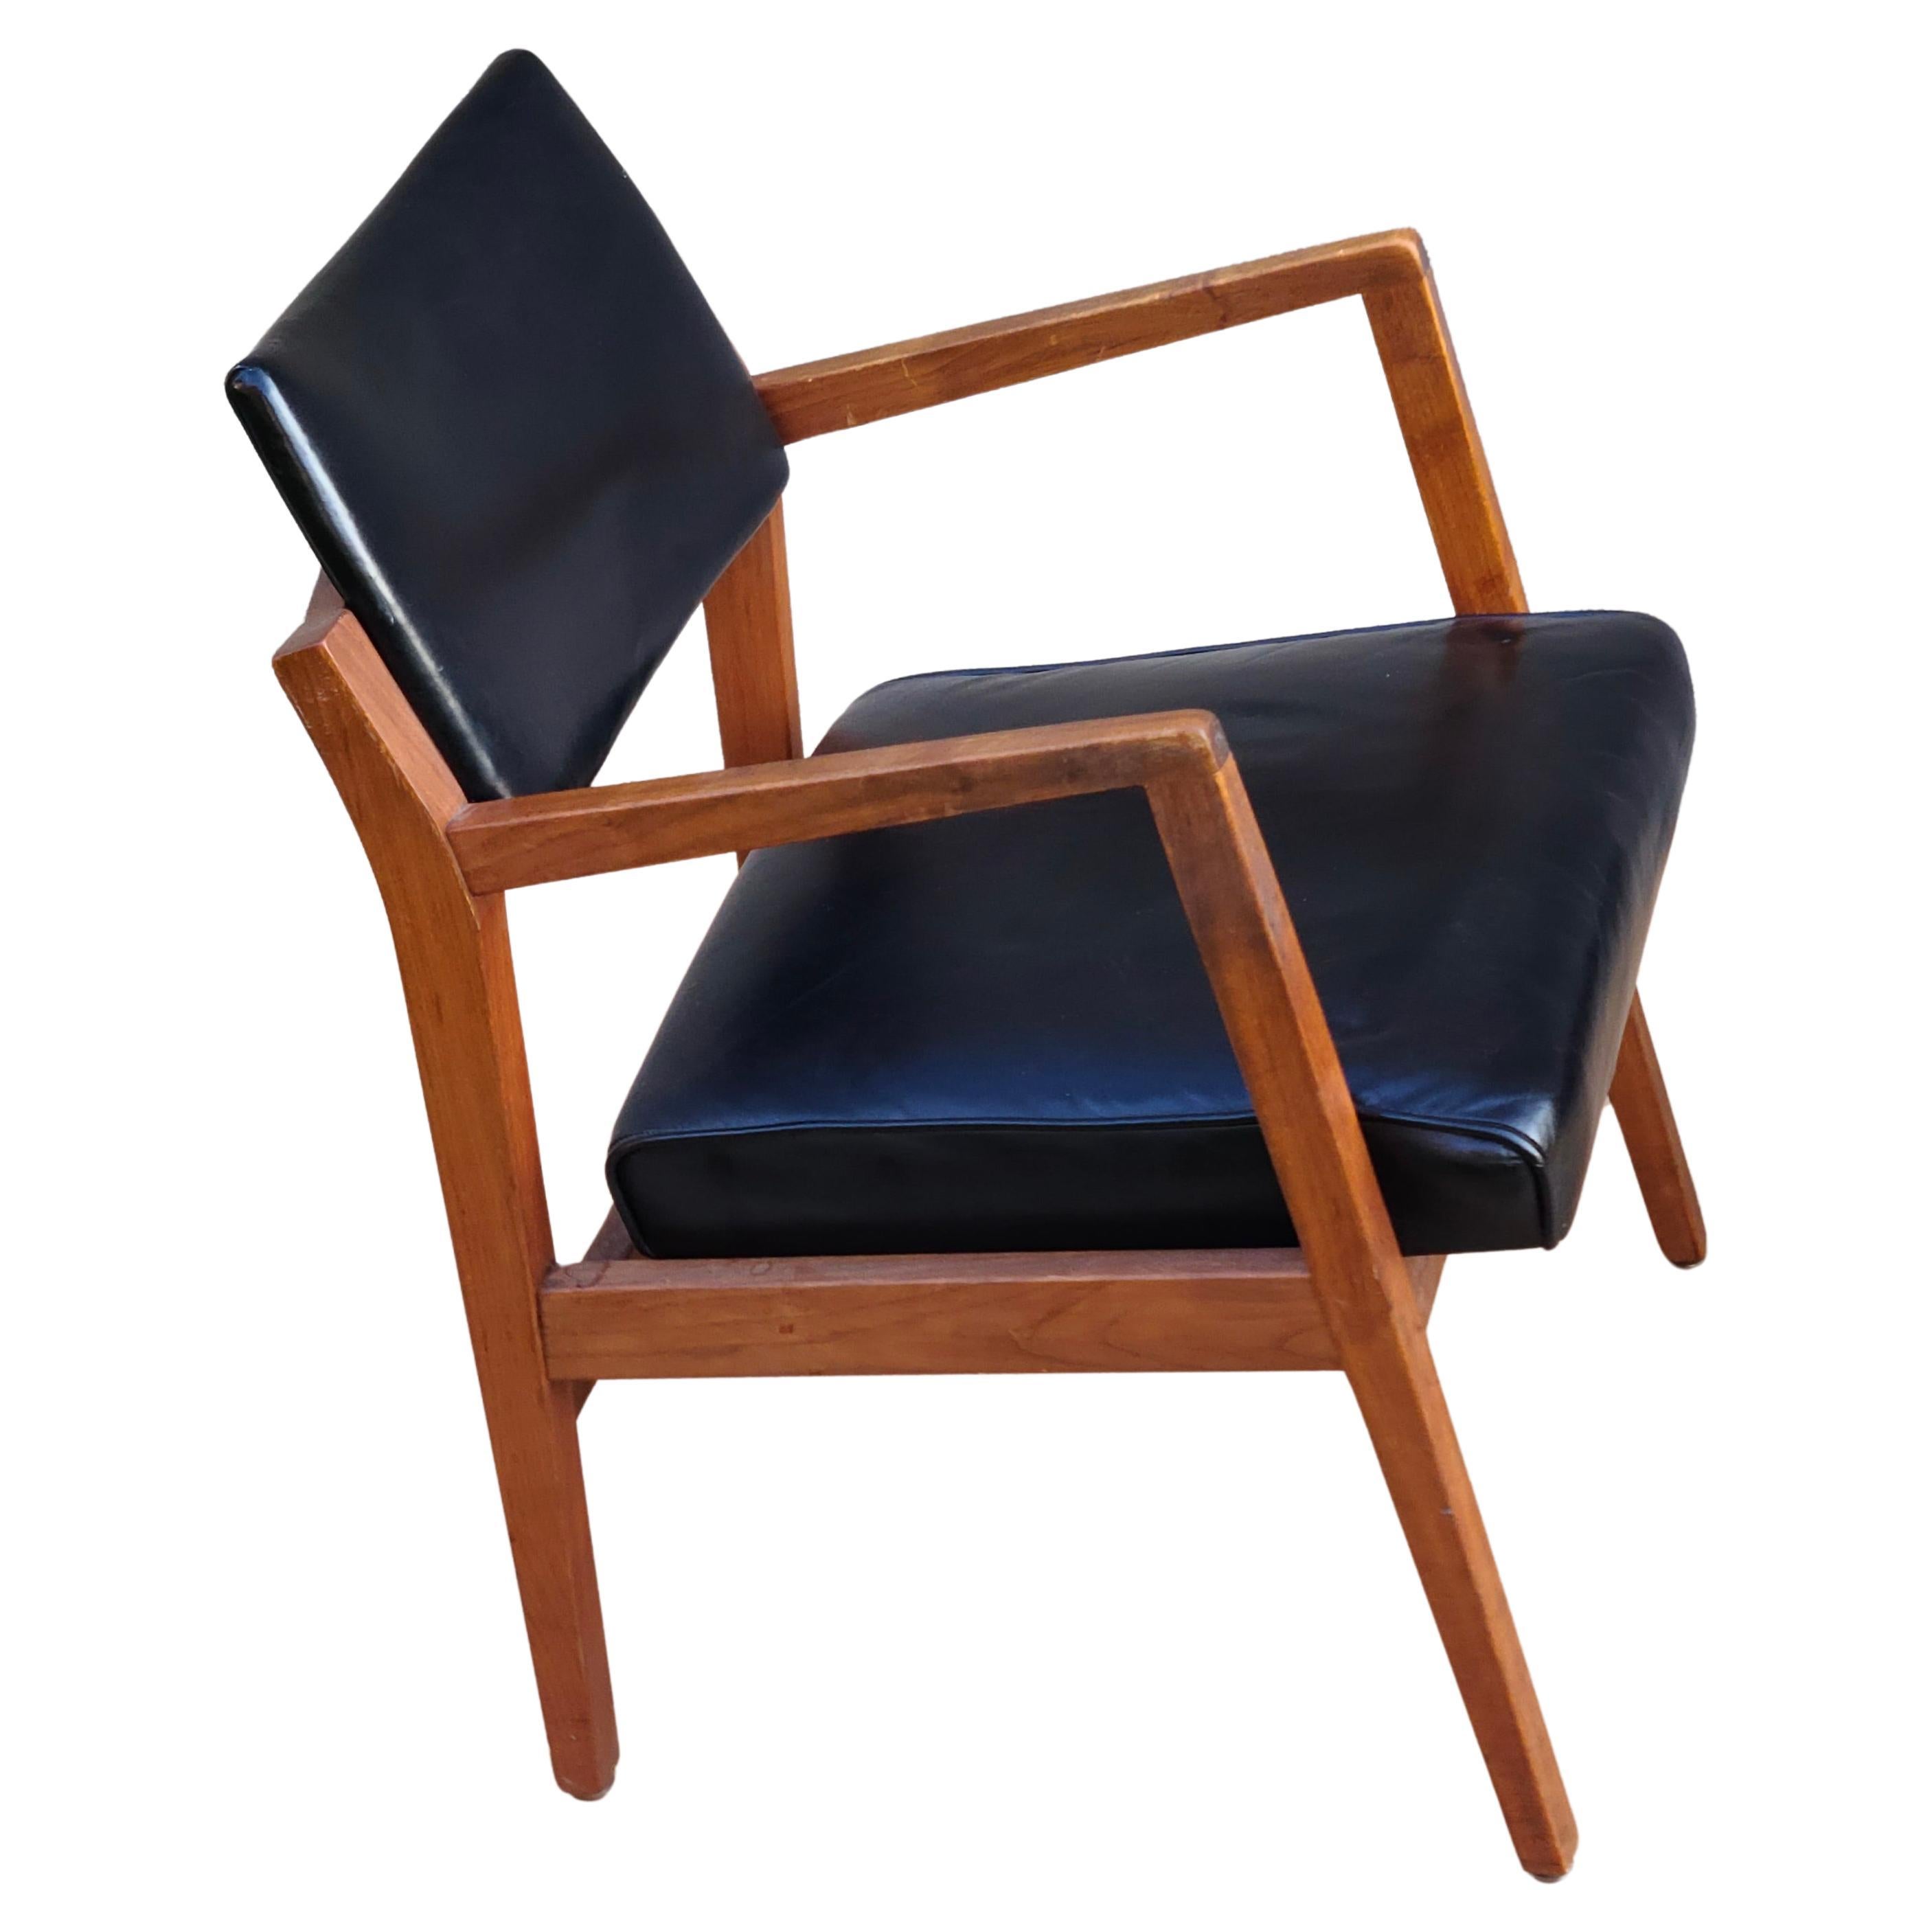 Ensemble de 12 chaises à bras par Jens Risom.
Noyer Cadres. Assise et dossier en cuir Vintage.

